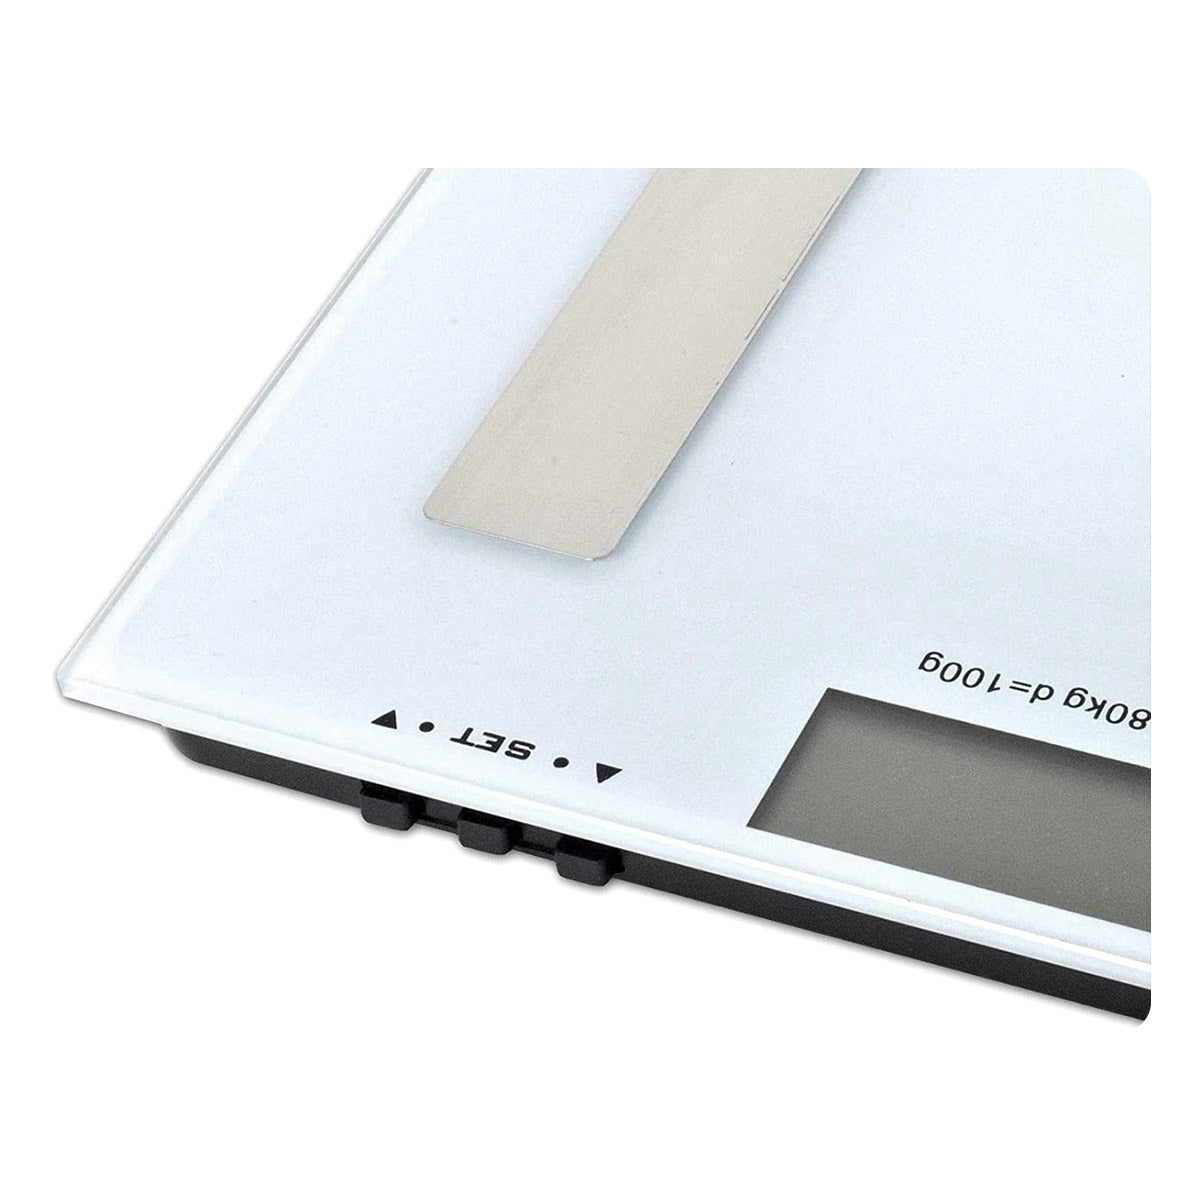 Ariko Elta Digital Body - Fit Scale - Balance personnelle - Balance d'analyse - Blanc - Gris - Dimensions 28 x 28 x 2,5 Cm - Maximum 180 KG - Y compris 2 piles AAA